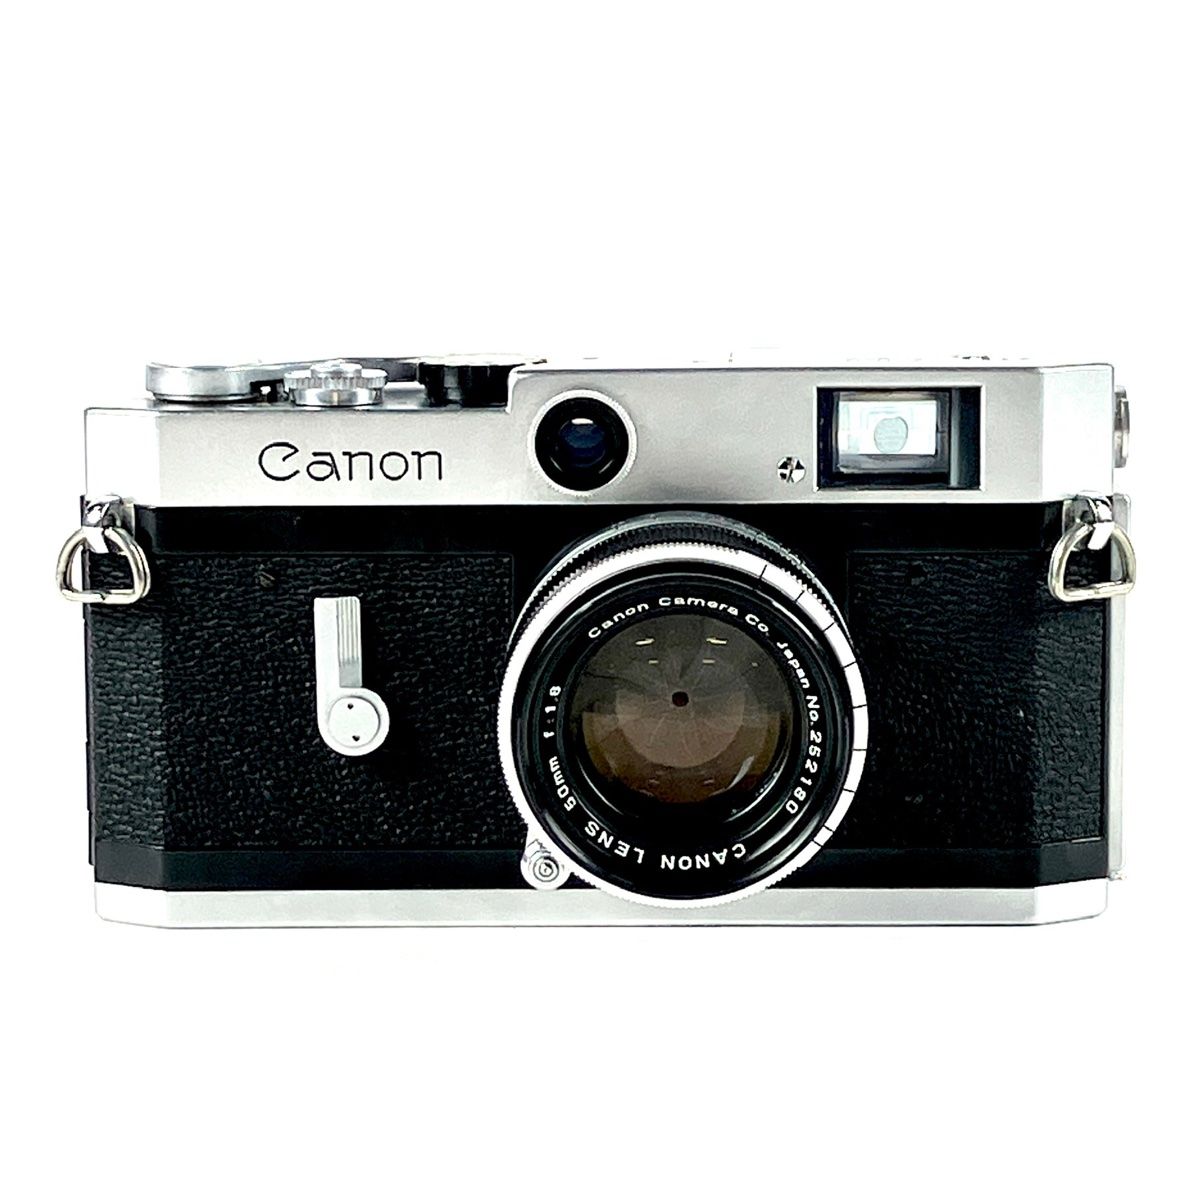 CANON キャノン P レンジファインダー フィルム カメラ レンズ 209